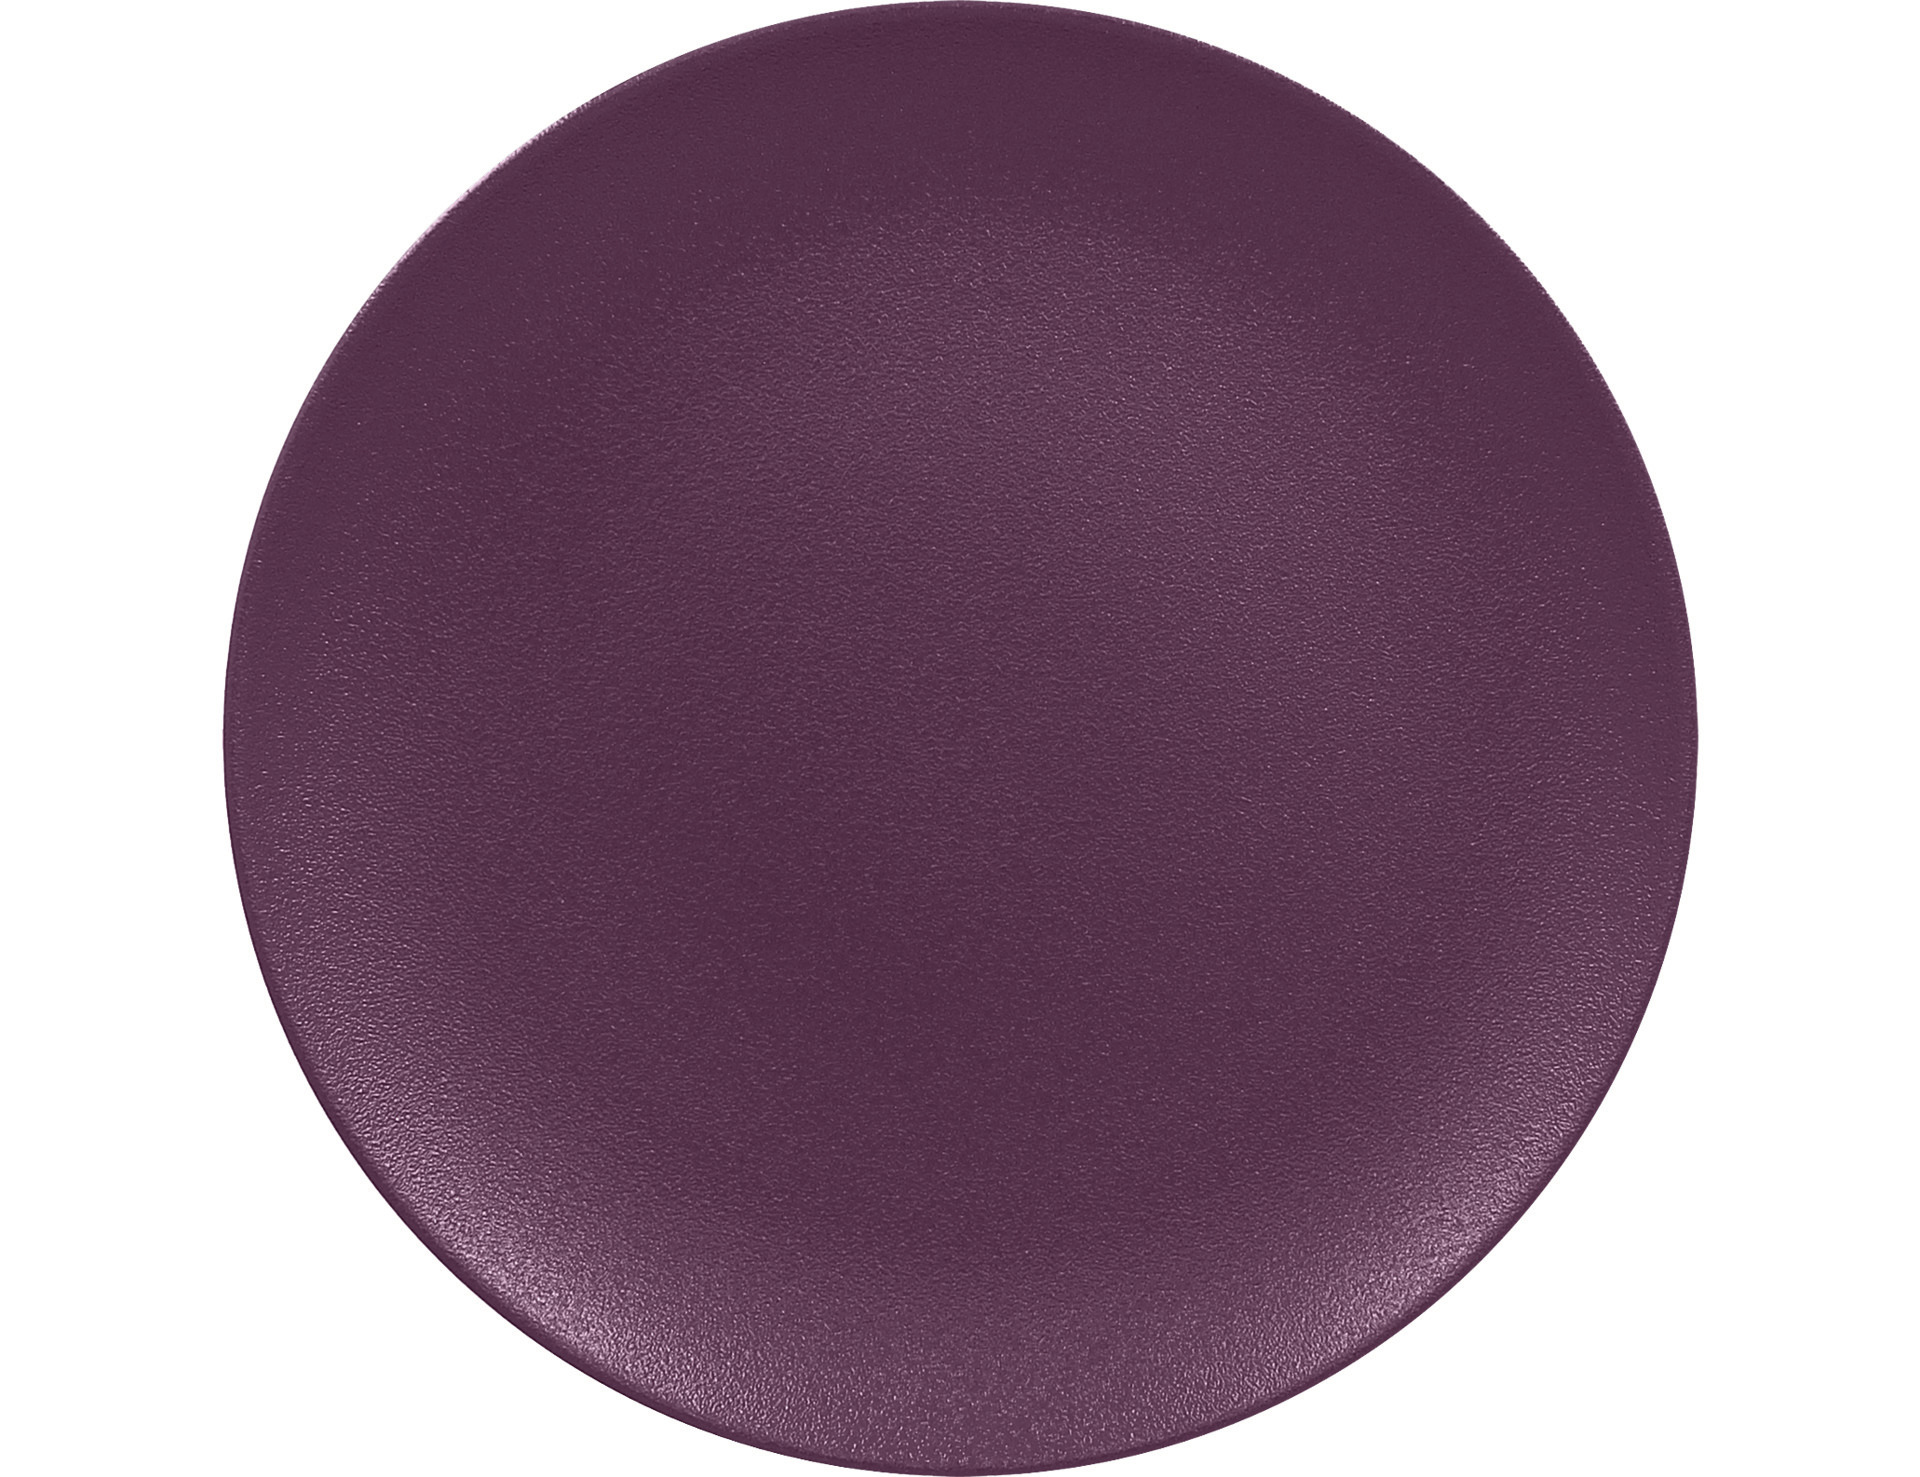 Coupteller flach 270 mm plum-purple